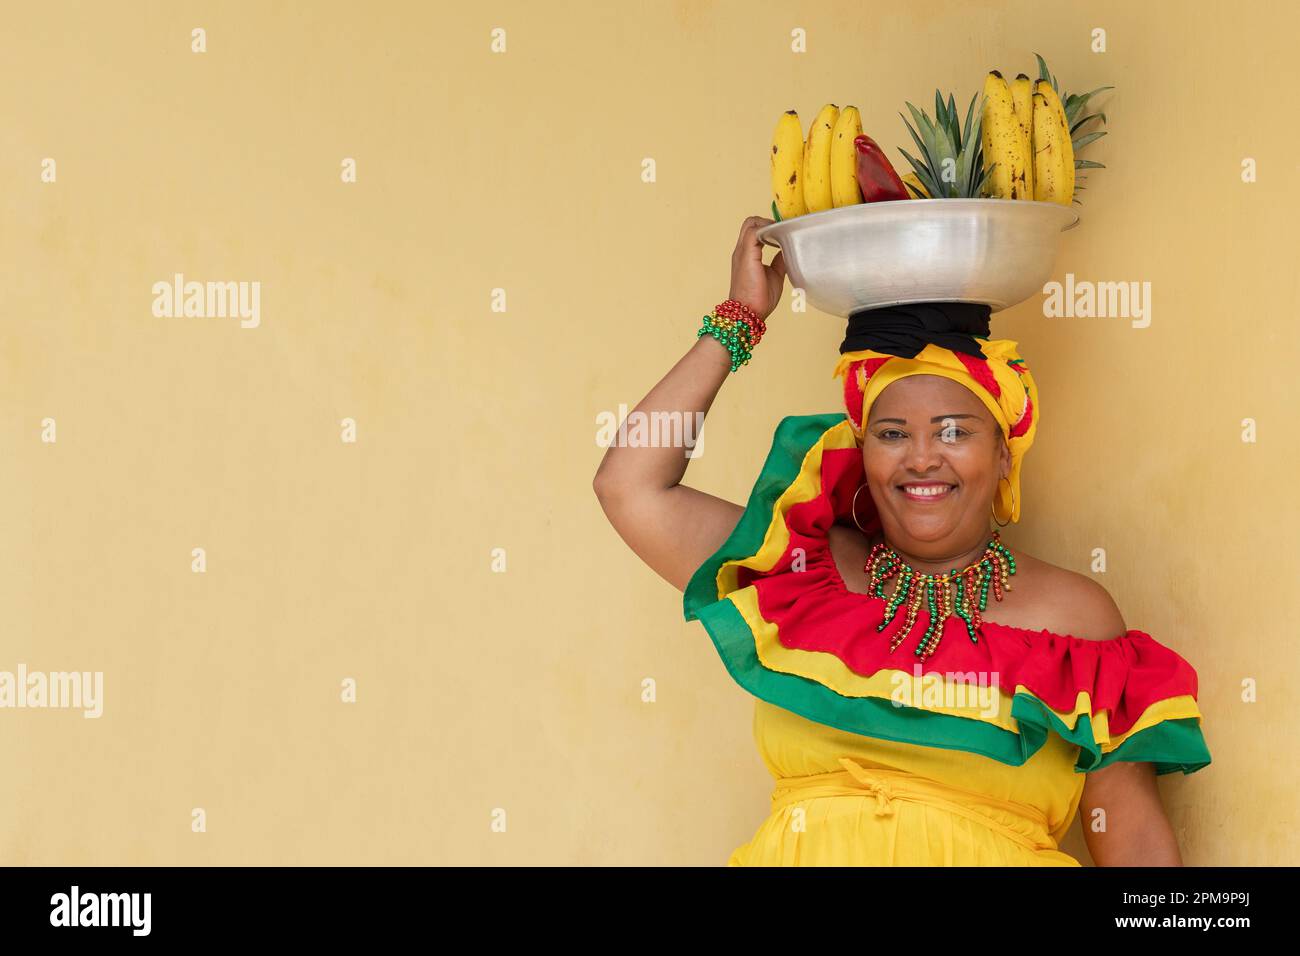 Ein fröhlicher, lächelnder Verkäufer von frischem Obst aus Palenquera im historischen Viertel von Cartagena, Kolumbien. Fröhliche kolumbianische Frau in traditionellen Kostümen. Stockfoto